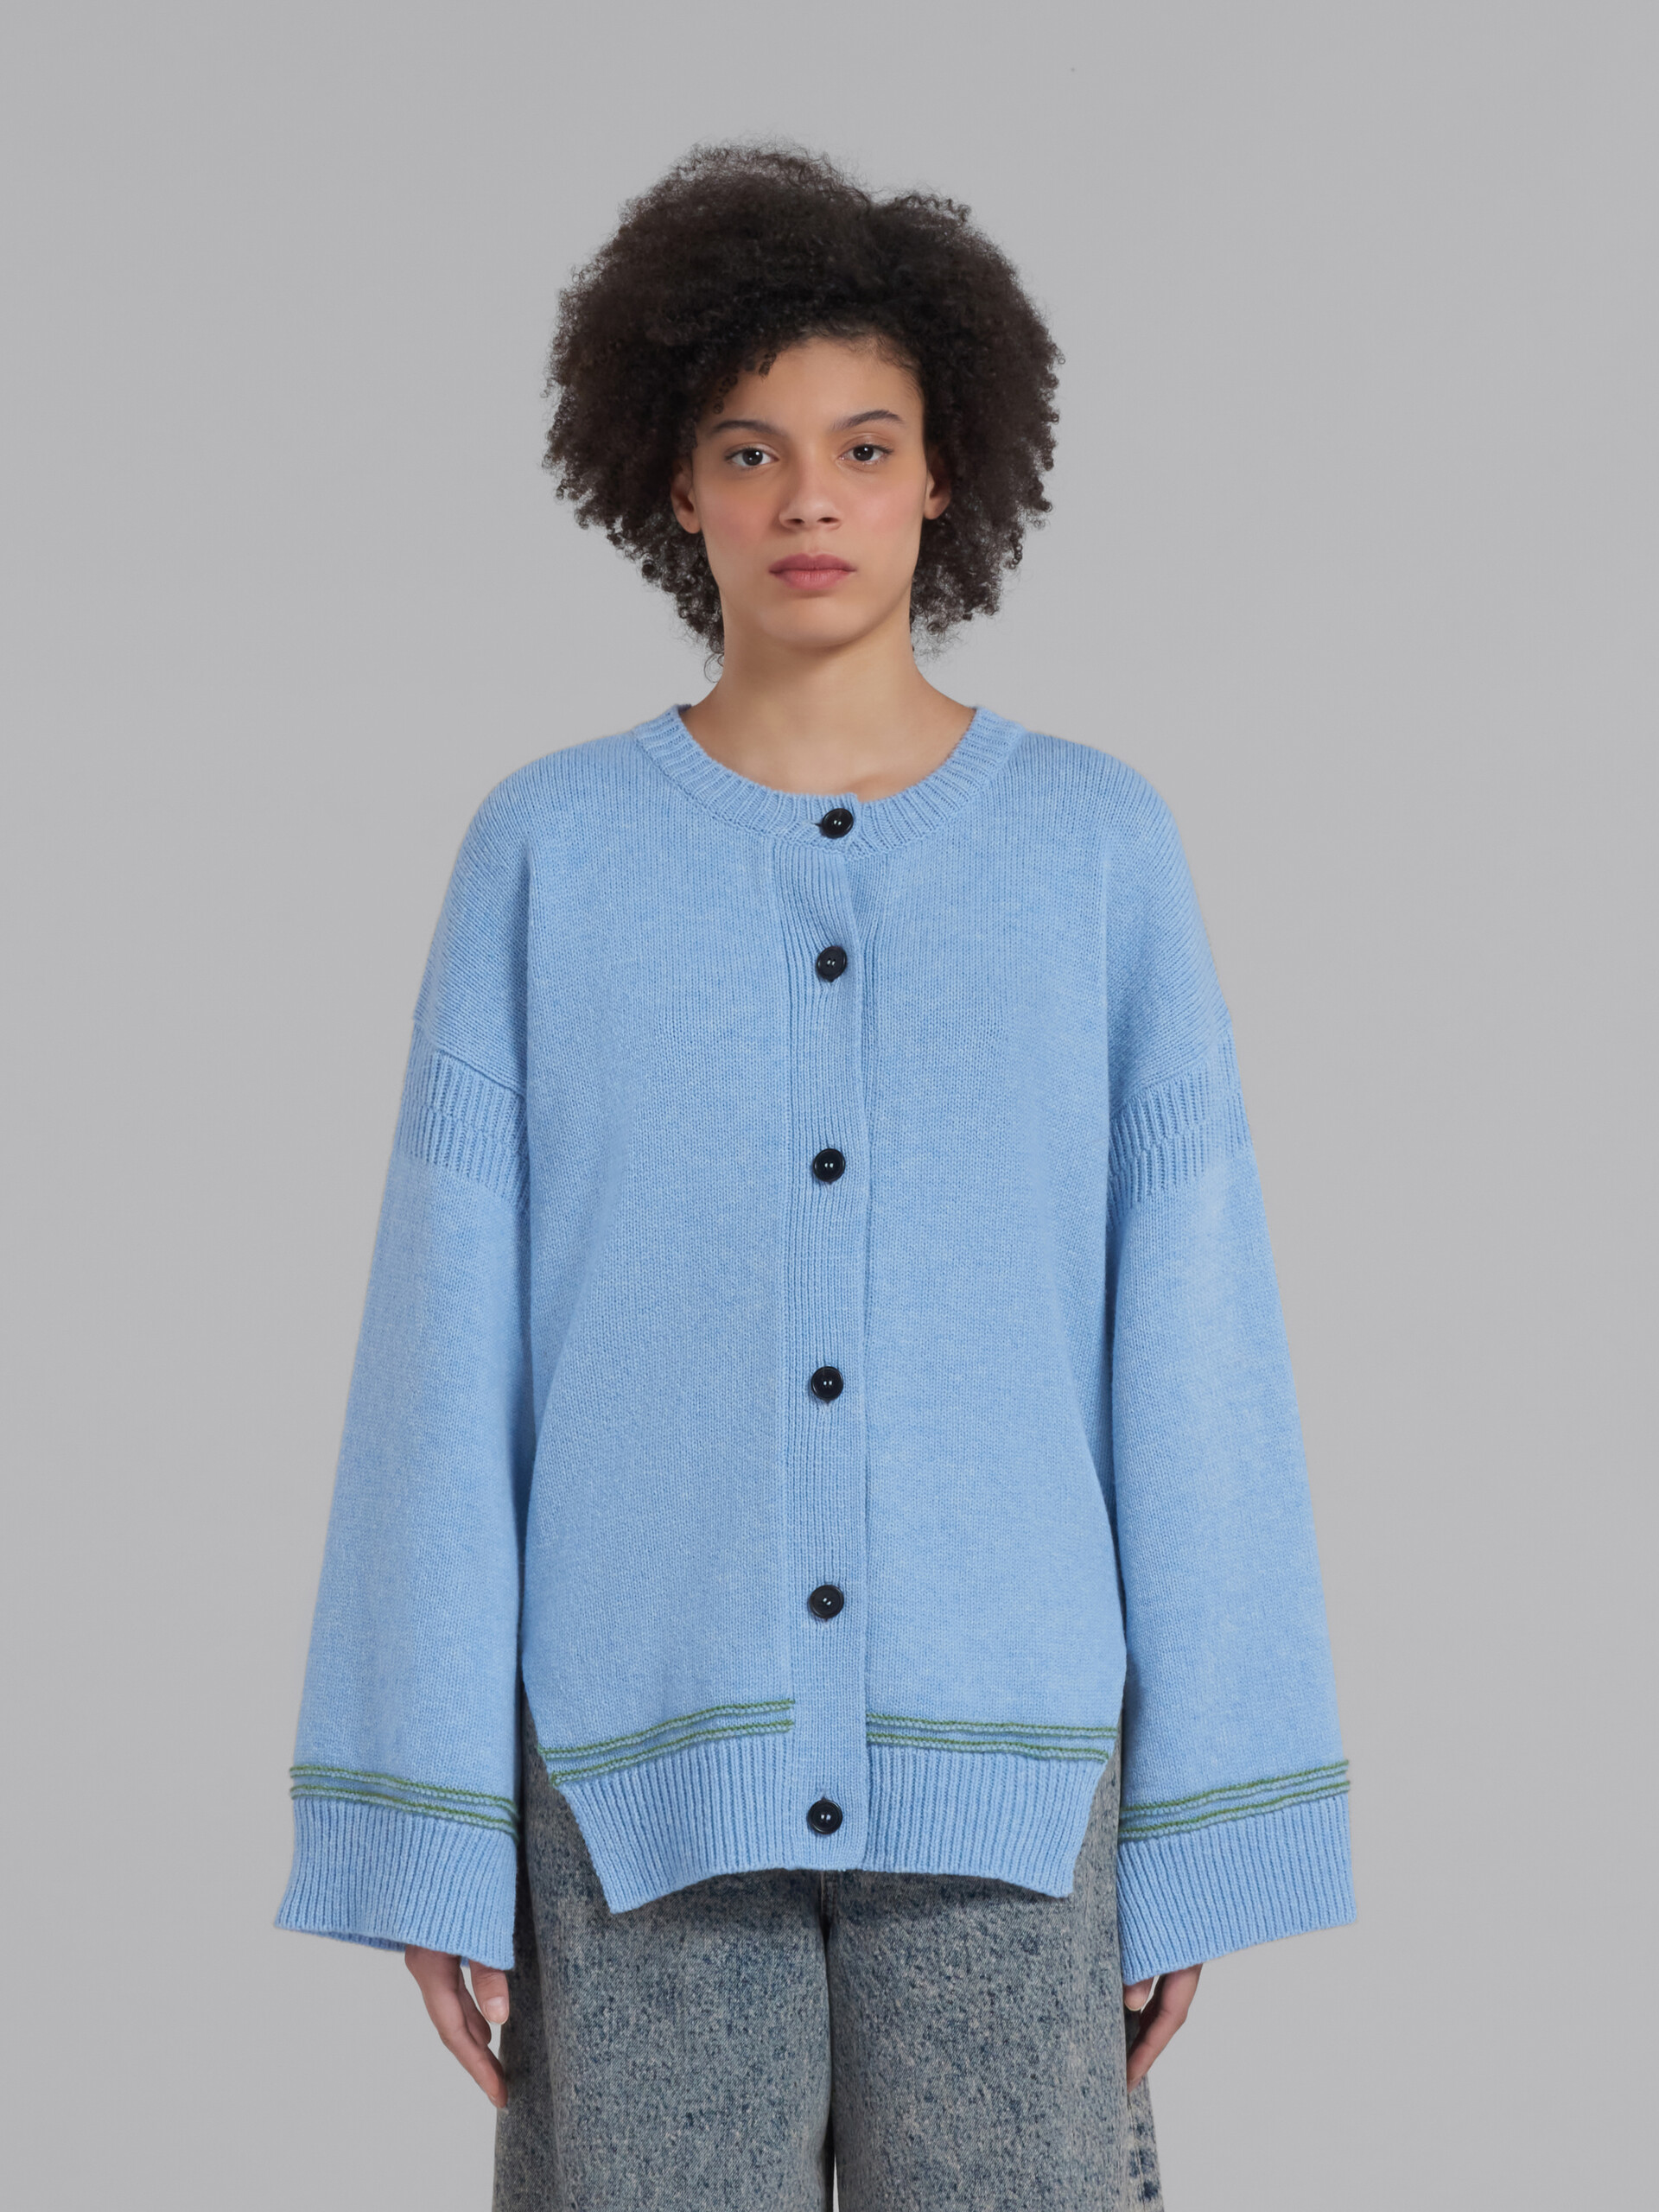 Cárdigan azul de lana con manga de tipo kimono - jerseys - Image 2